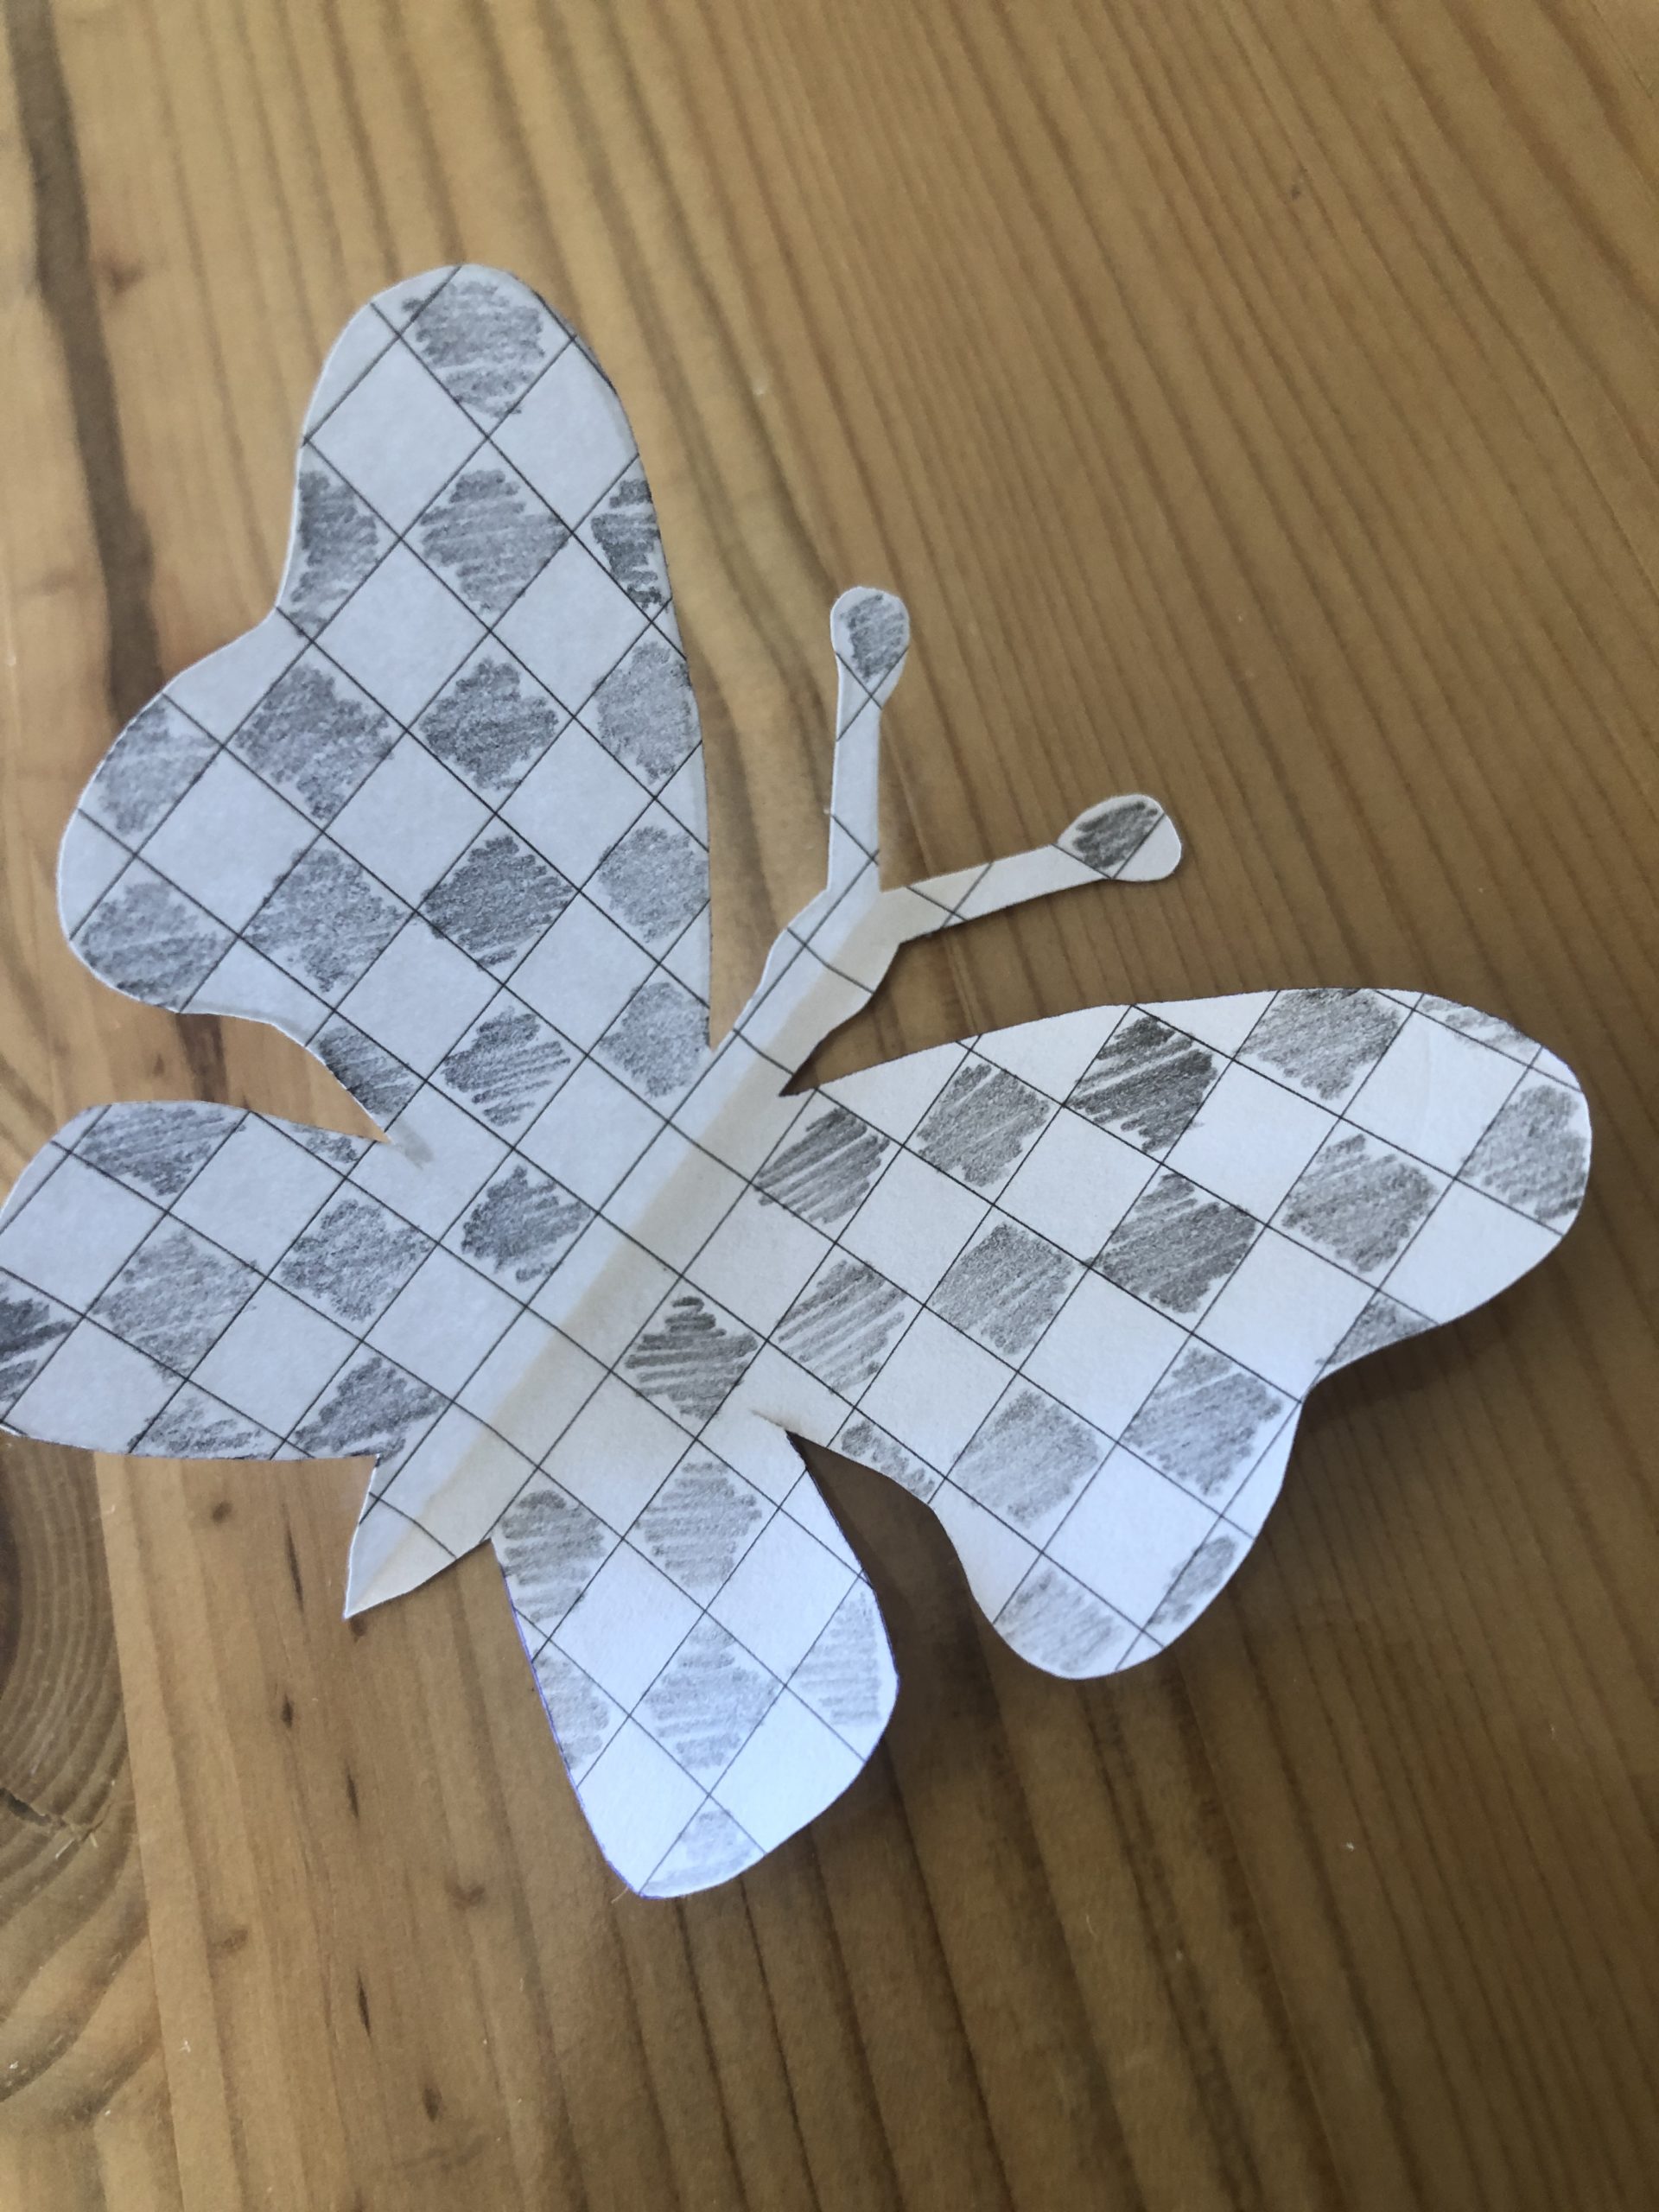 Bild zum Schritt 5 für das Bastel- und DIY-Abenteuer für Kinder: 'Die mittlere Kästchenreihe (der Körper des Schmetterlings) bleibt frei!'